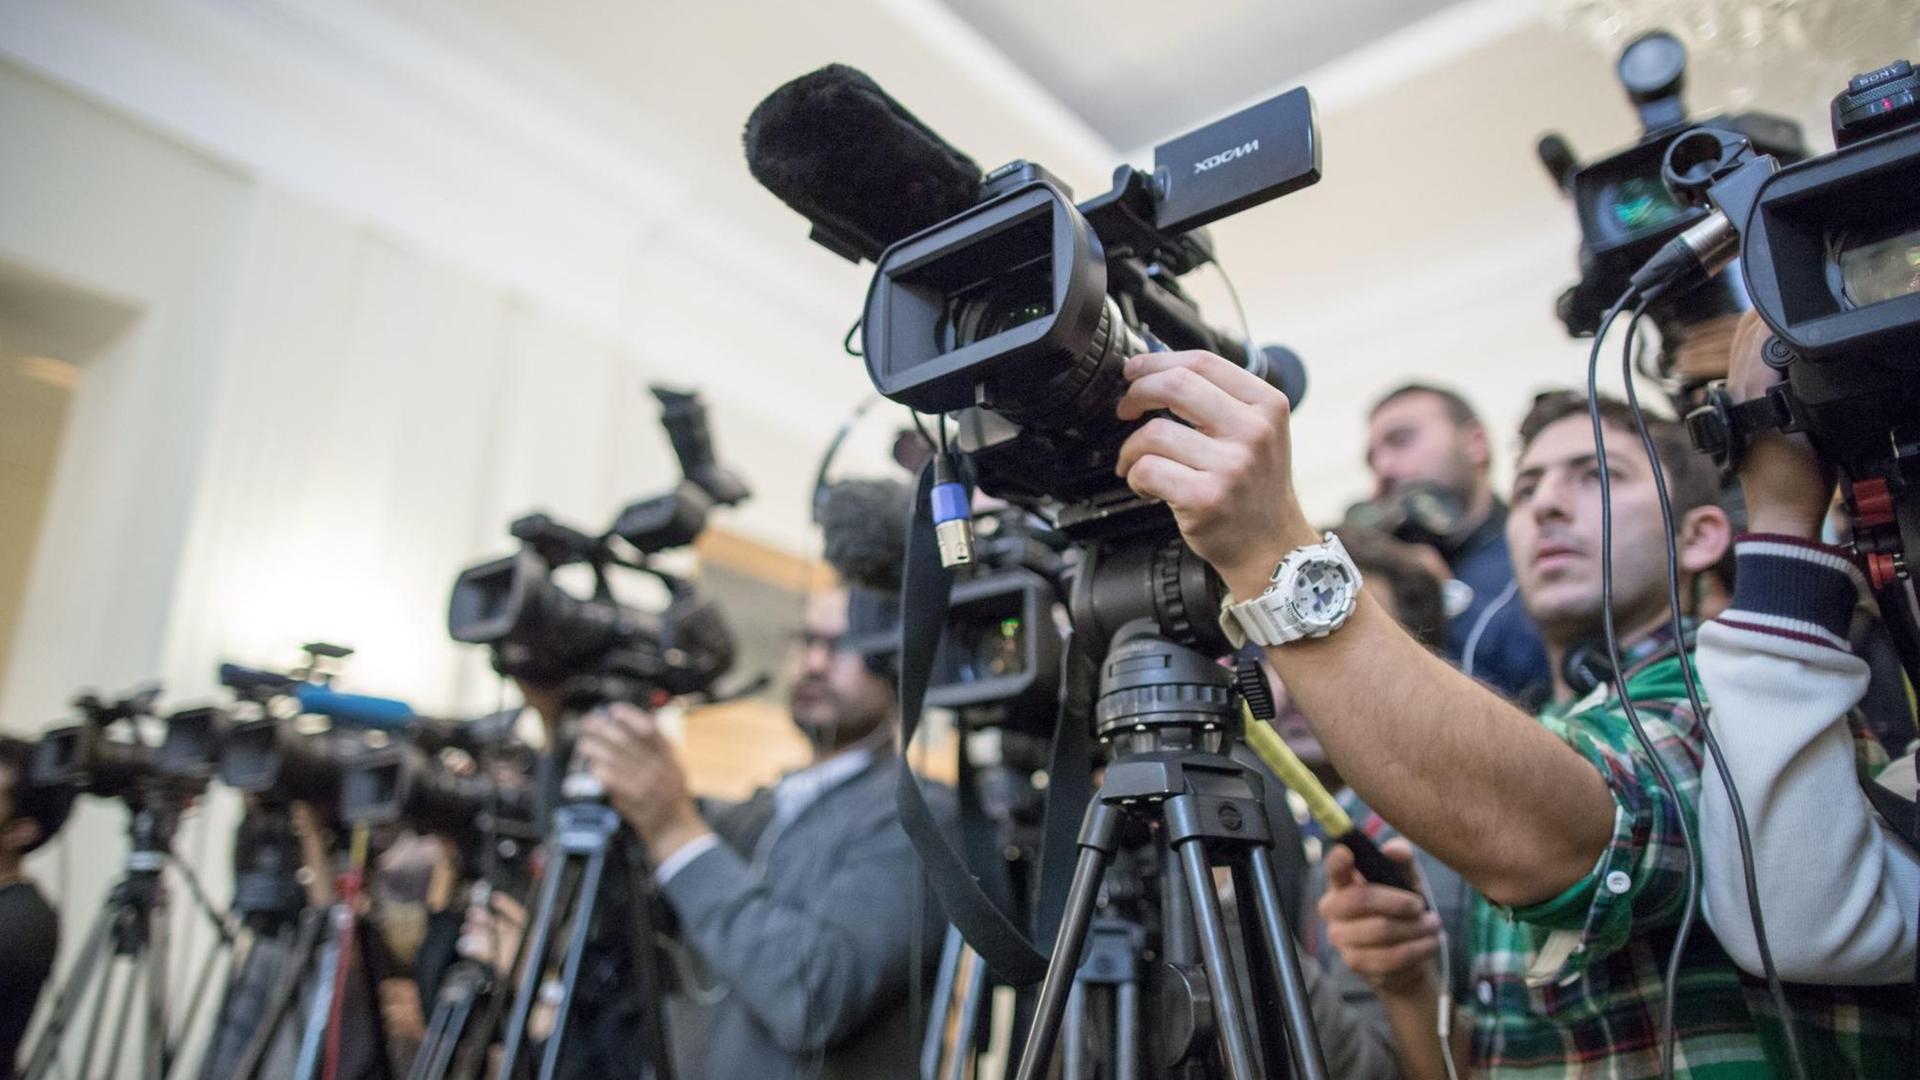 Journalisten - iranische und ausländische - bei einer Pressekonferenz in Teheran